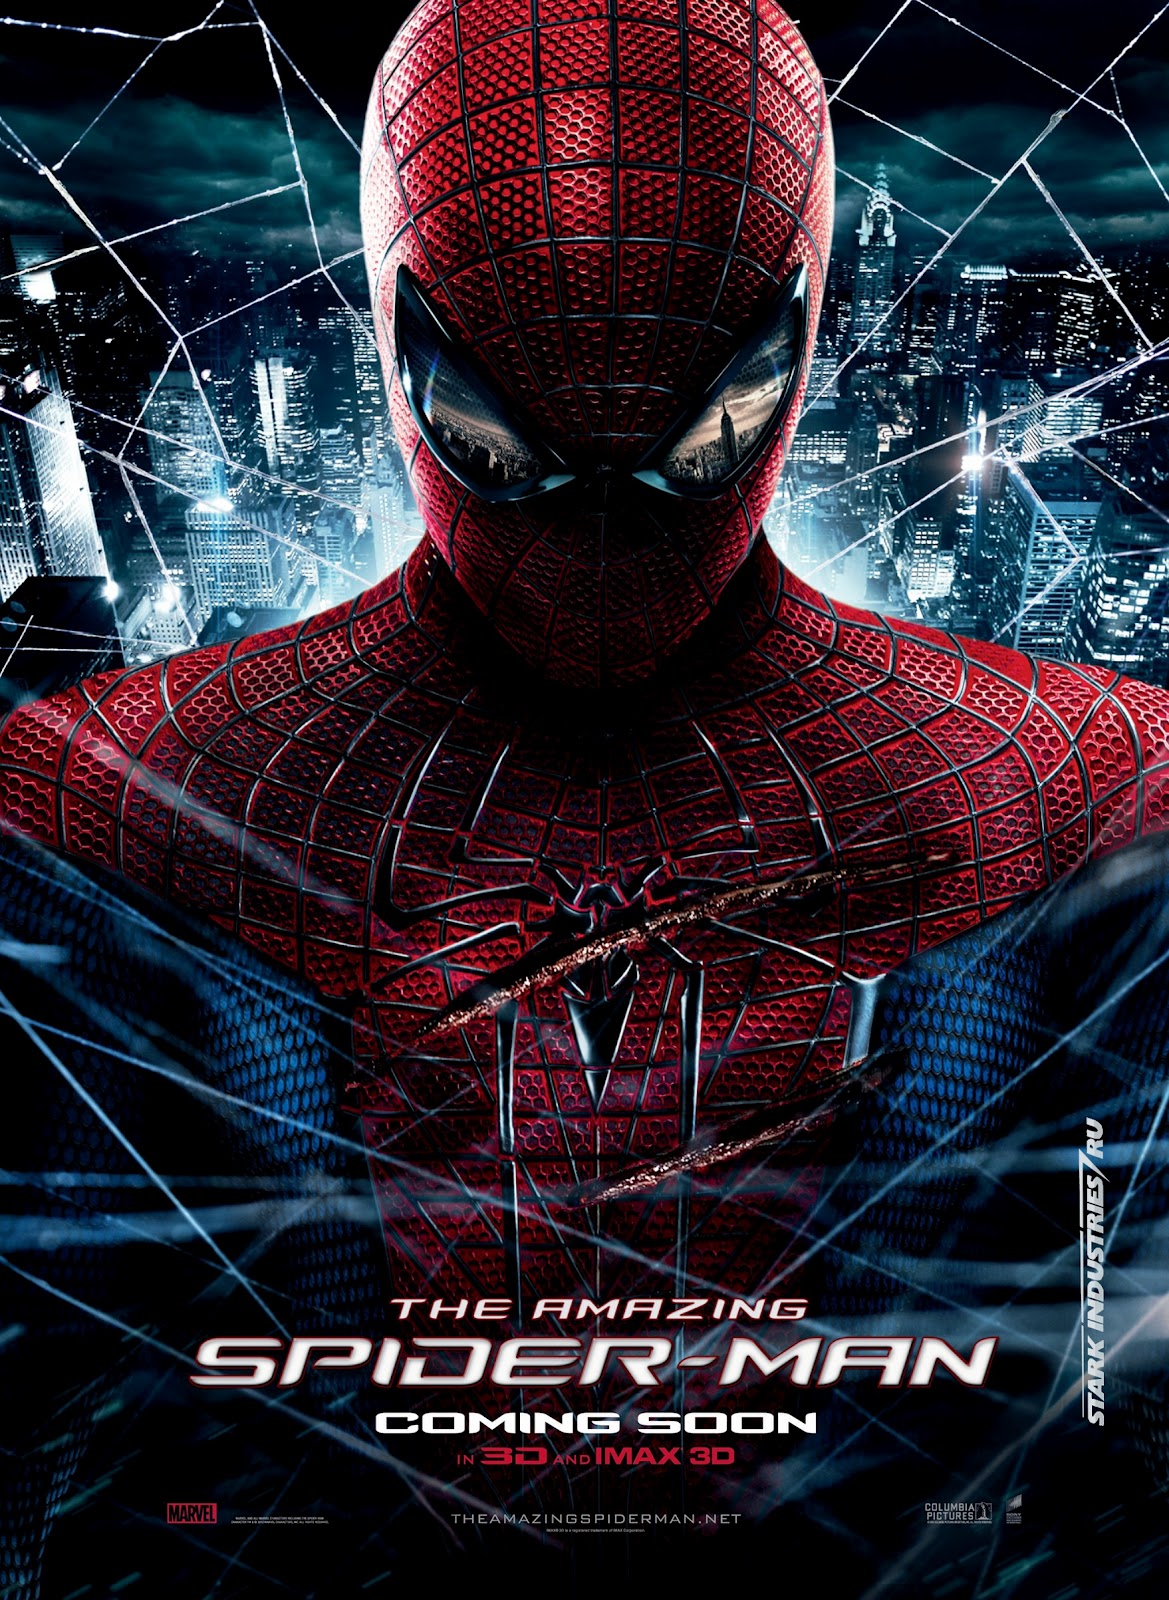 http://3.bp.blogspot.com/-WQB6bR9SBRc/T_KLps4lSBI/AAAAAAAAe5Q/c2876pHMXuk/s1600/amazing-spider-man-movie-poster.jpg